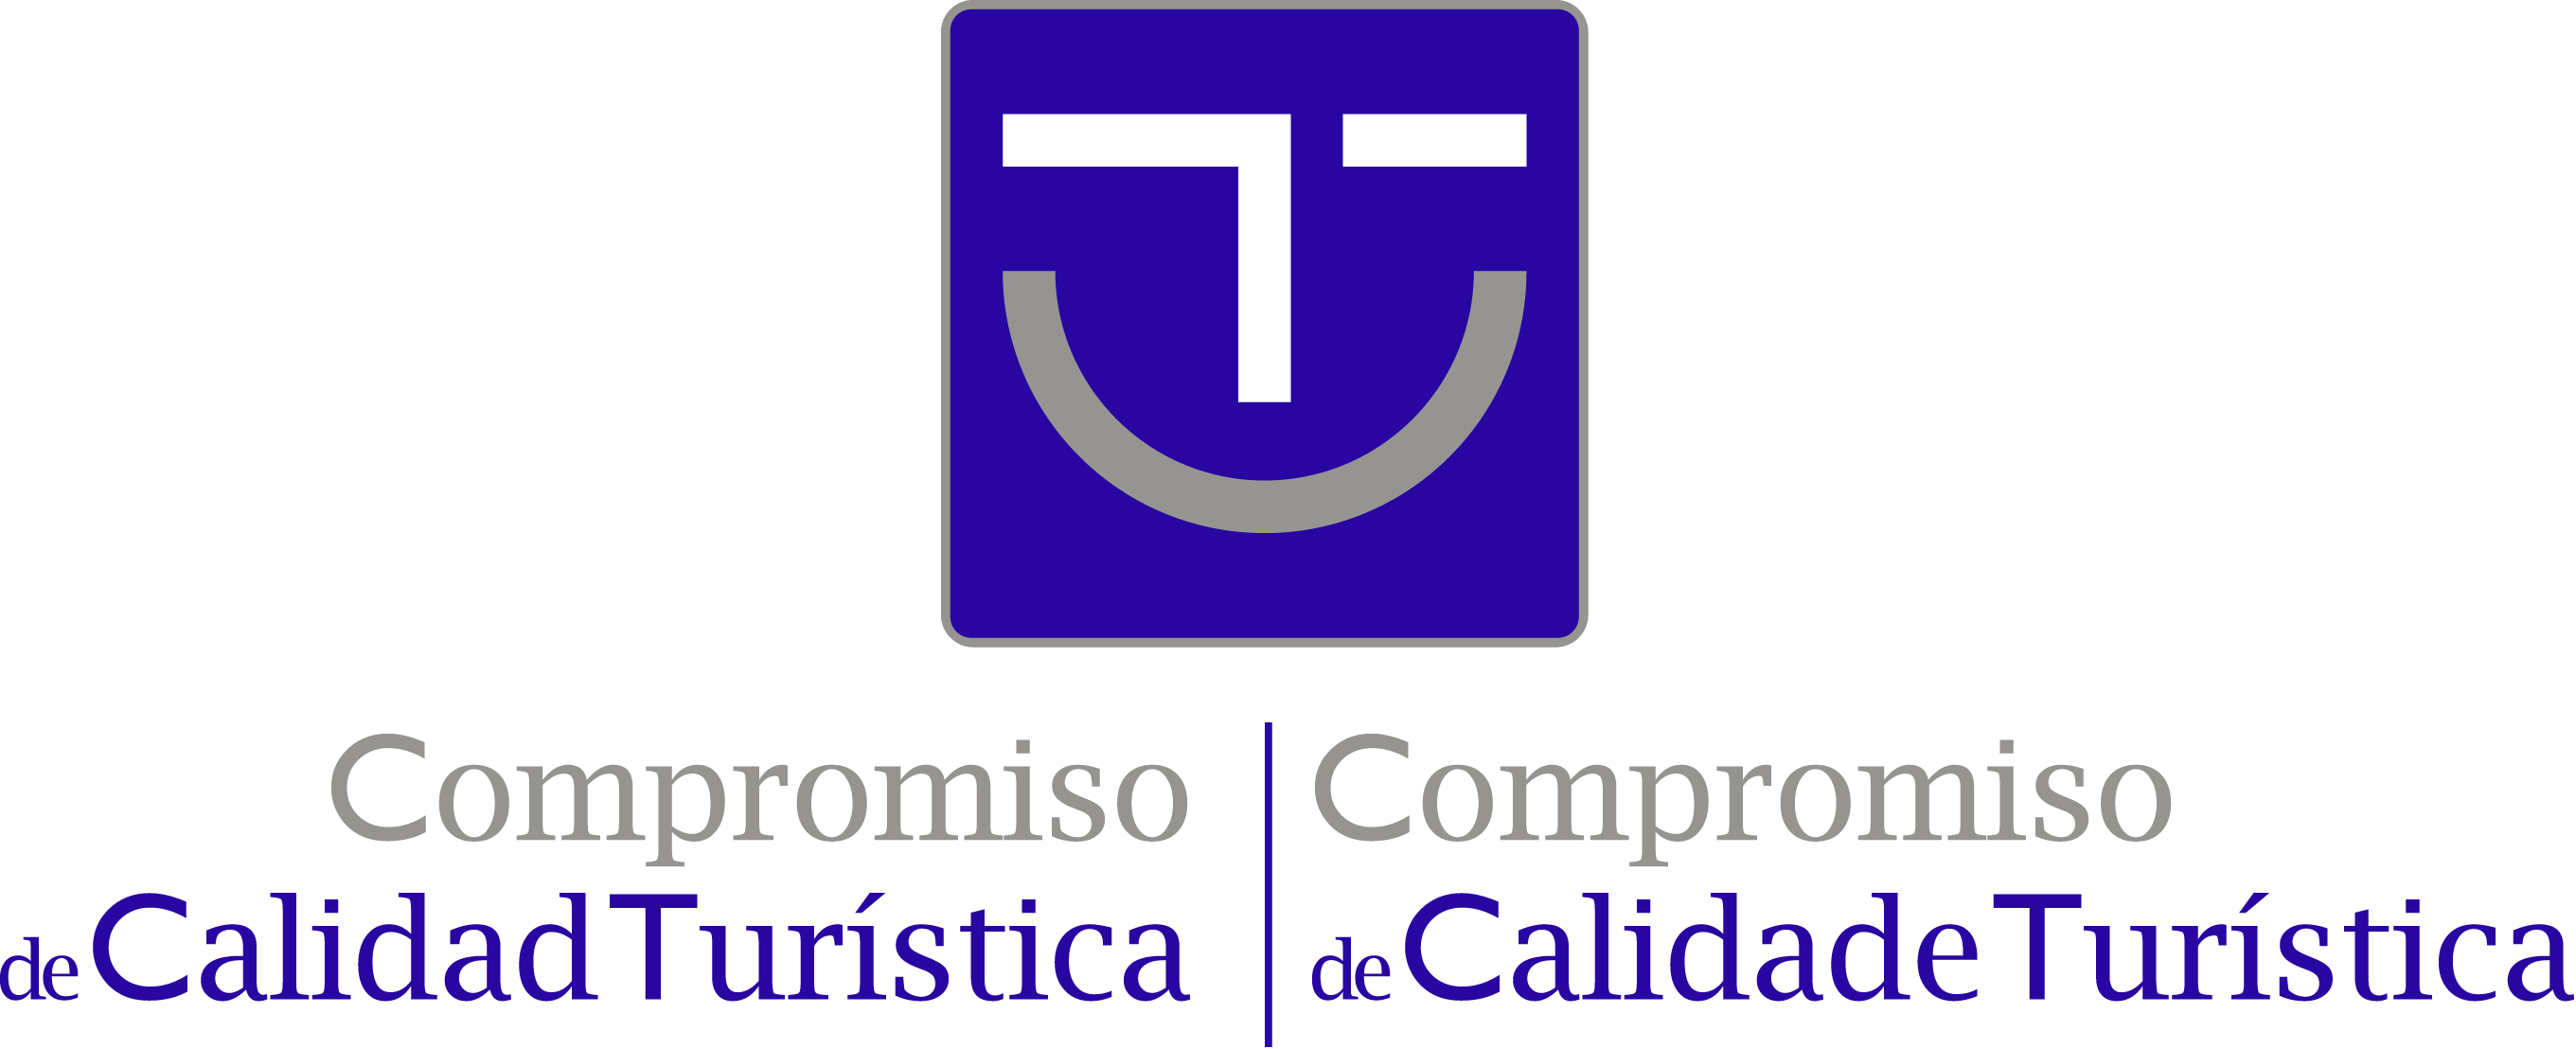 Logotipo horizontal de Compromiso de calidad turística